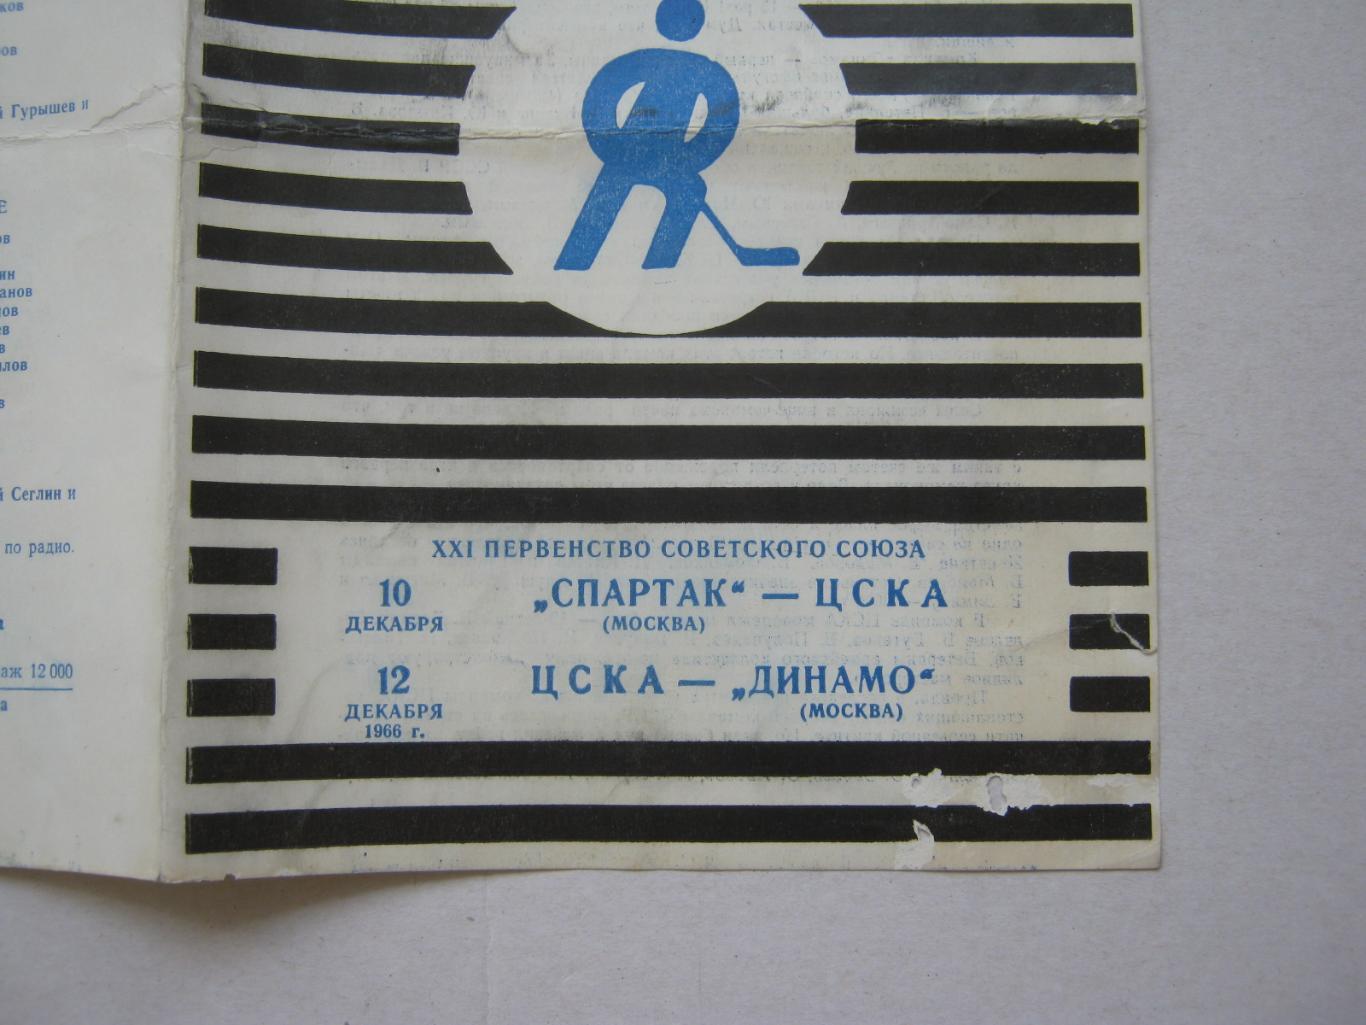 Спартак(Москва) - ЦСКА 10.12.1966 и ЦСКА - Динамо(Москва) 12.12.1966 1